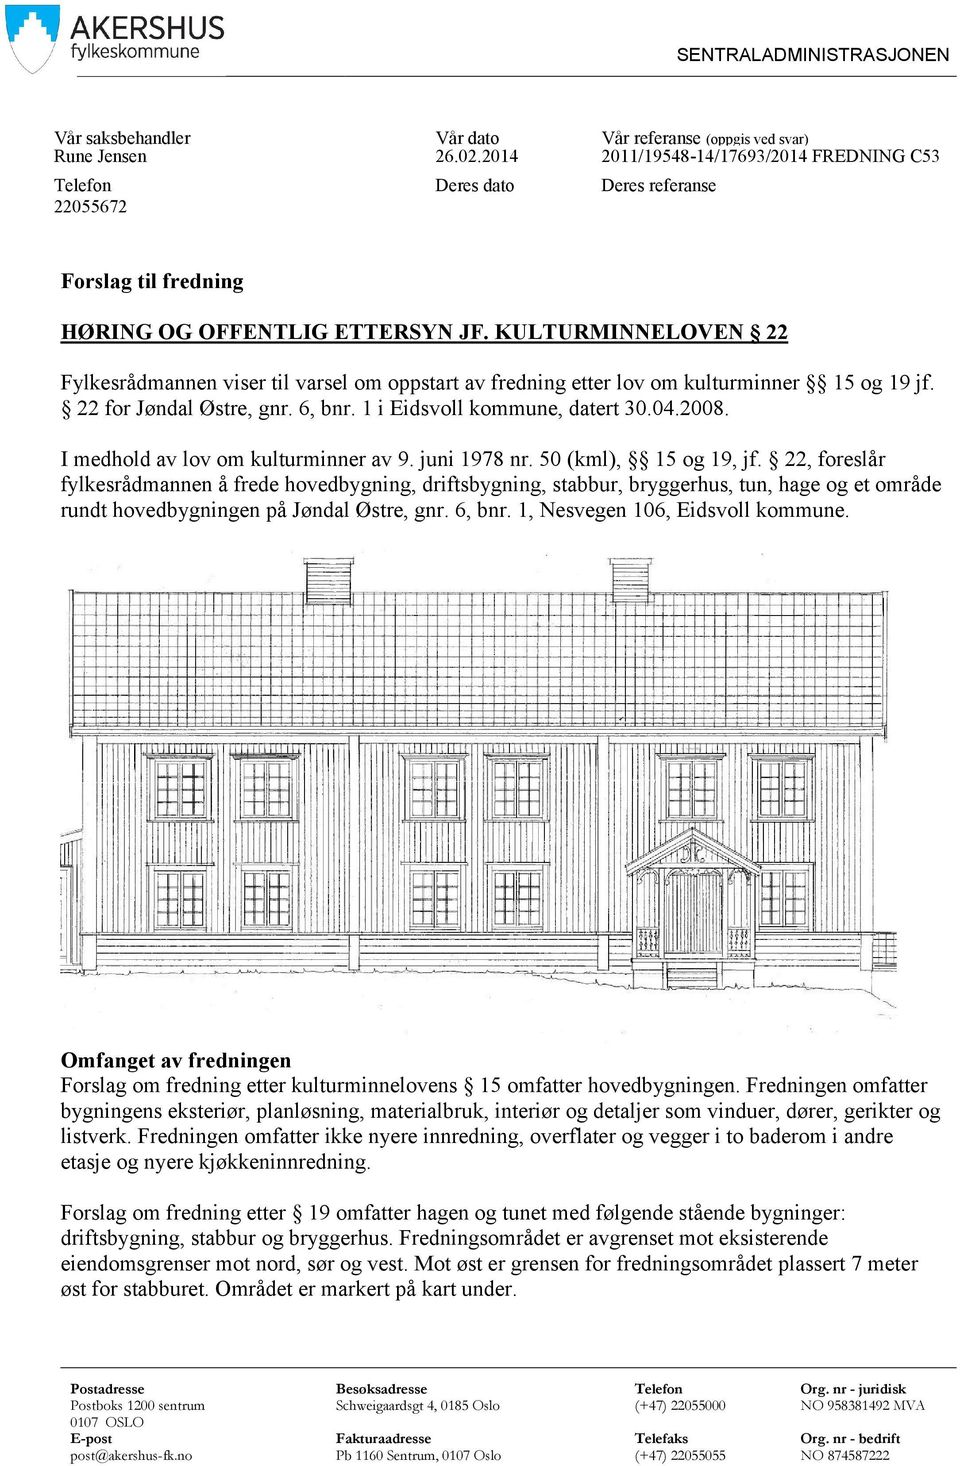 KULTURMINNELOVEN 22 Fylkesrådmannen viser til varsel om oppstart av fredning etter lov om kulturminner 15 og 19 jf. 22 for Jøndal Østre, gnr. 6, bnr. 1 i Eidsvoll kommune, datert 30.04.2008.